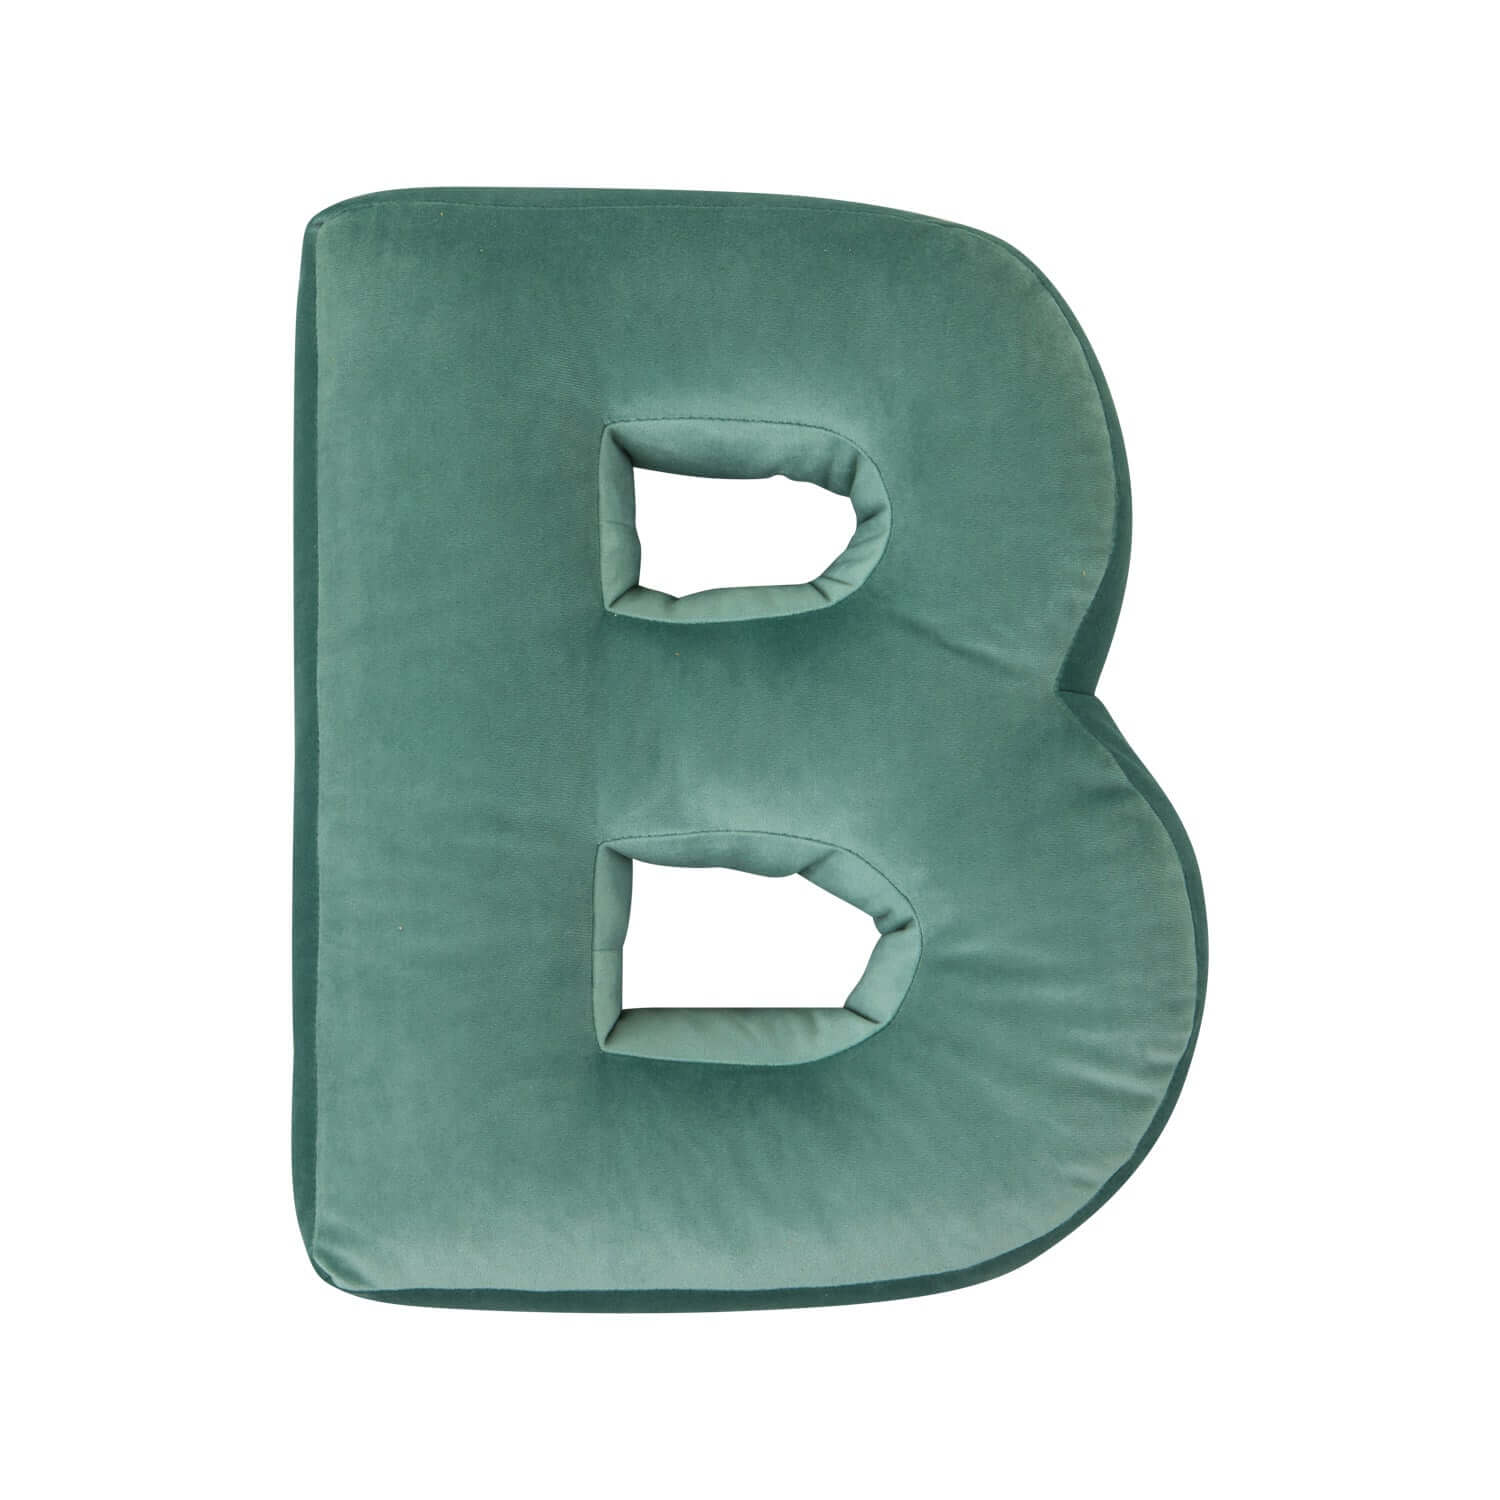 Poduszka literka welurowa B w kolorze miętowym od bettys home przód